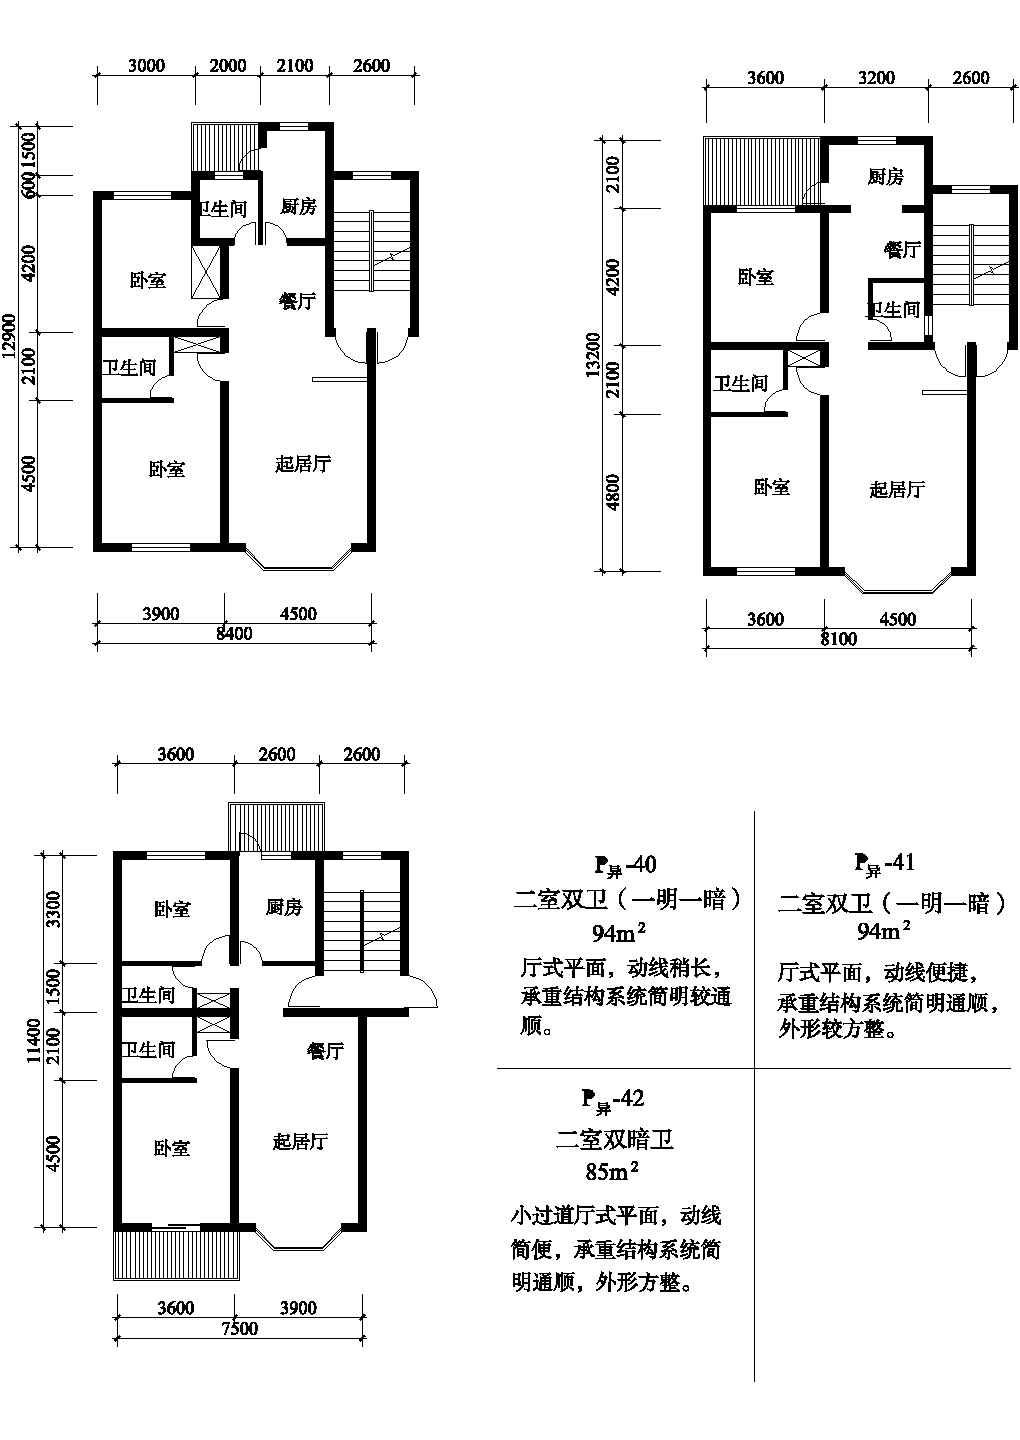 二室94/94/85平方单元式住宅平面图纸